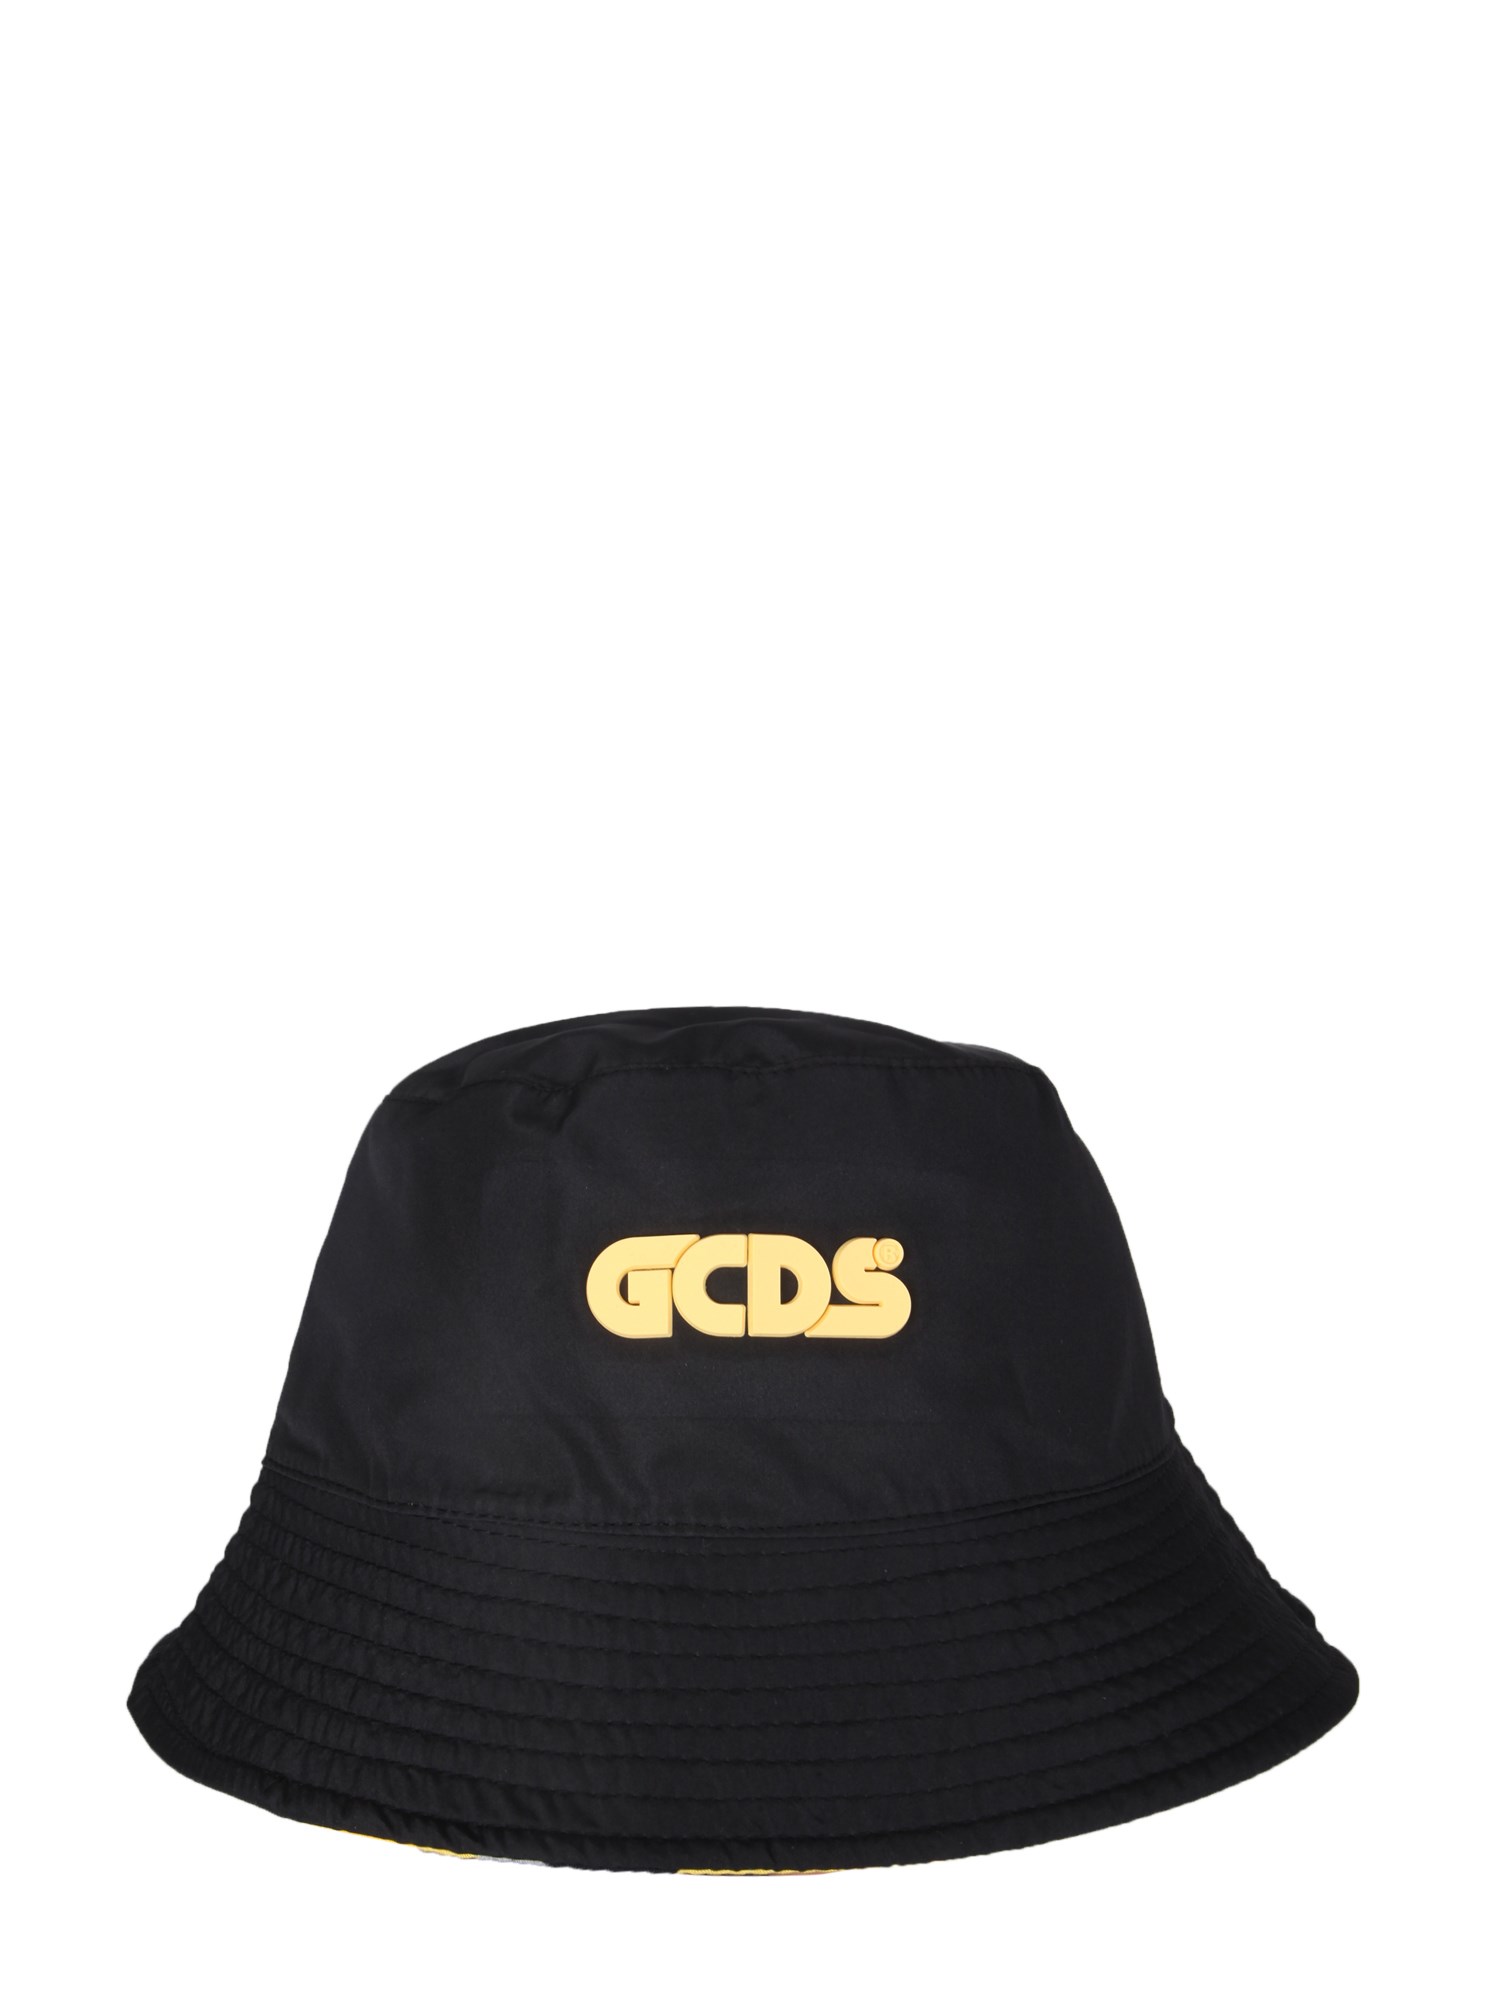 gcds bucket hat